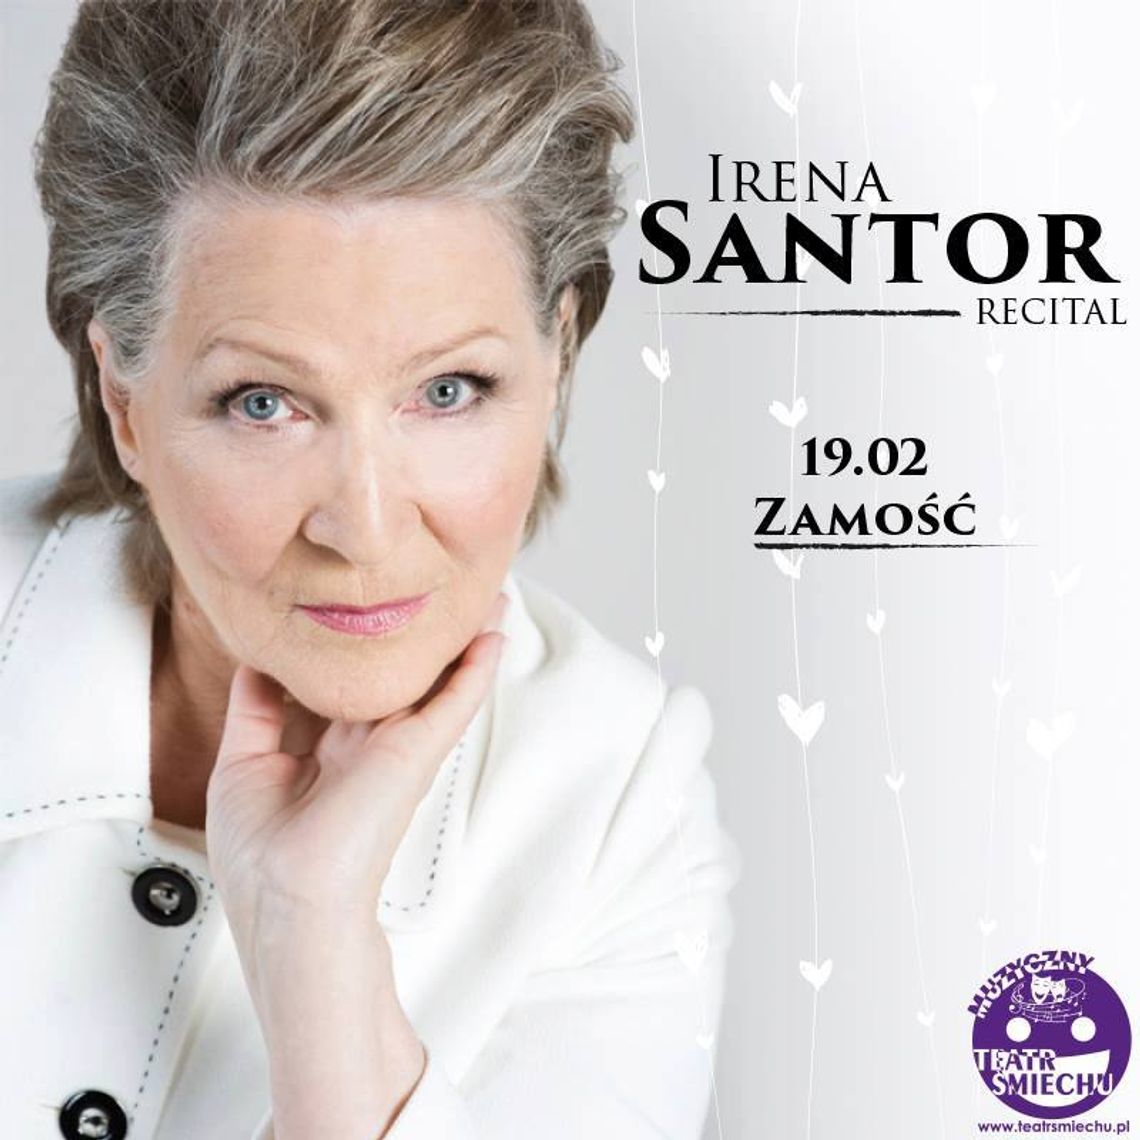 Irena Santor zaśpiewa w Zamościu. Mamy dla Was wejściówki